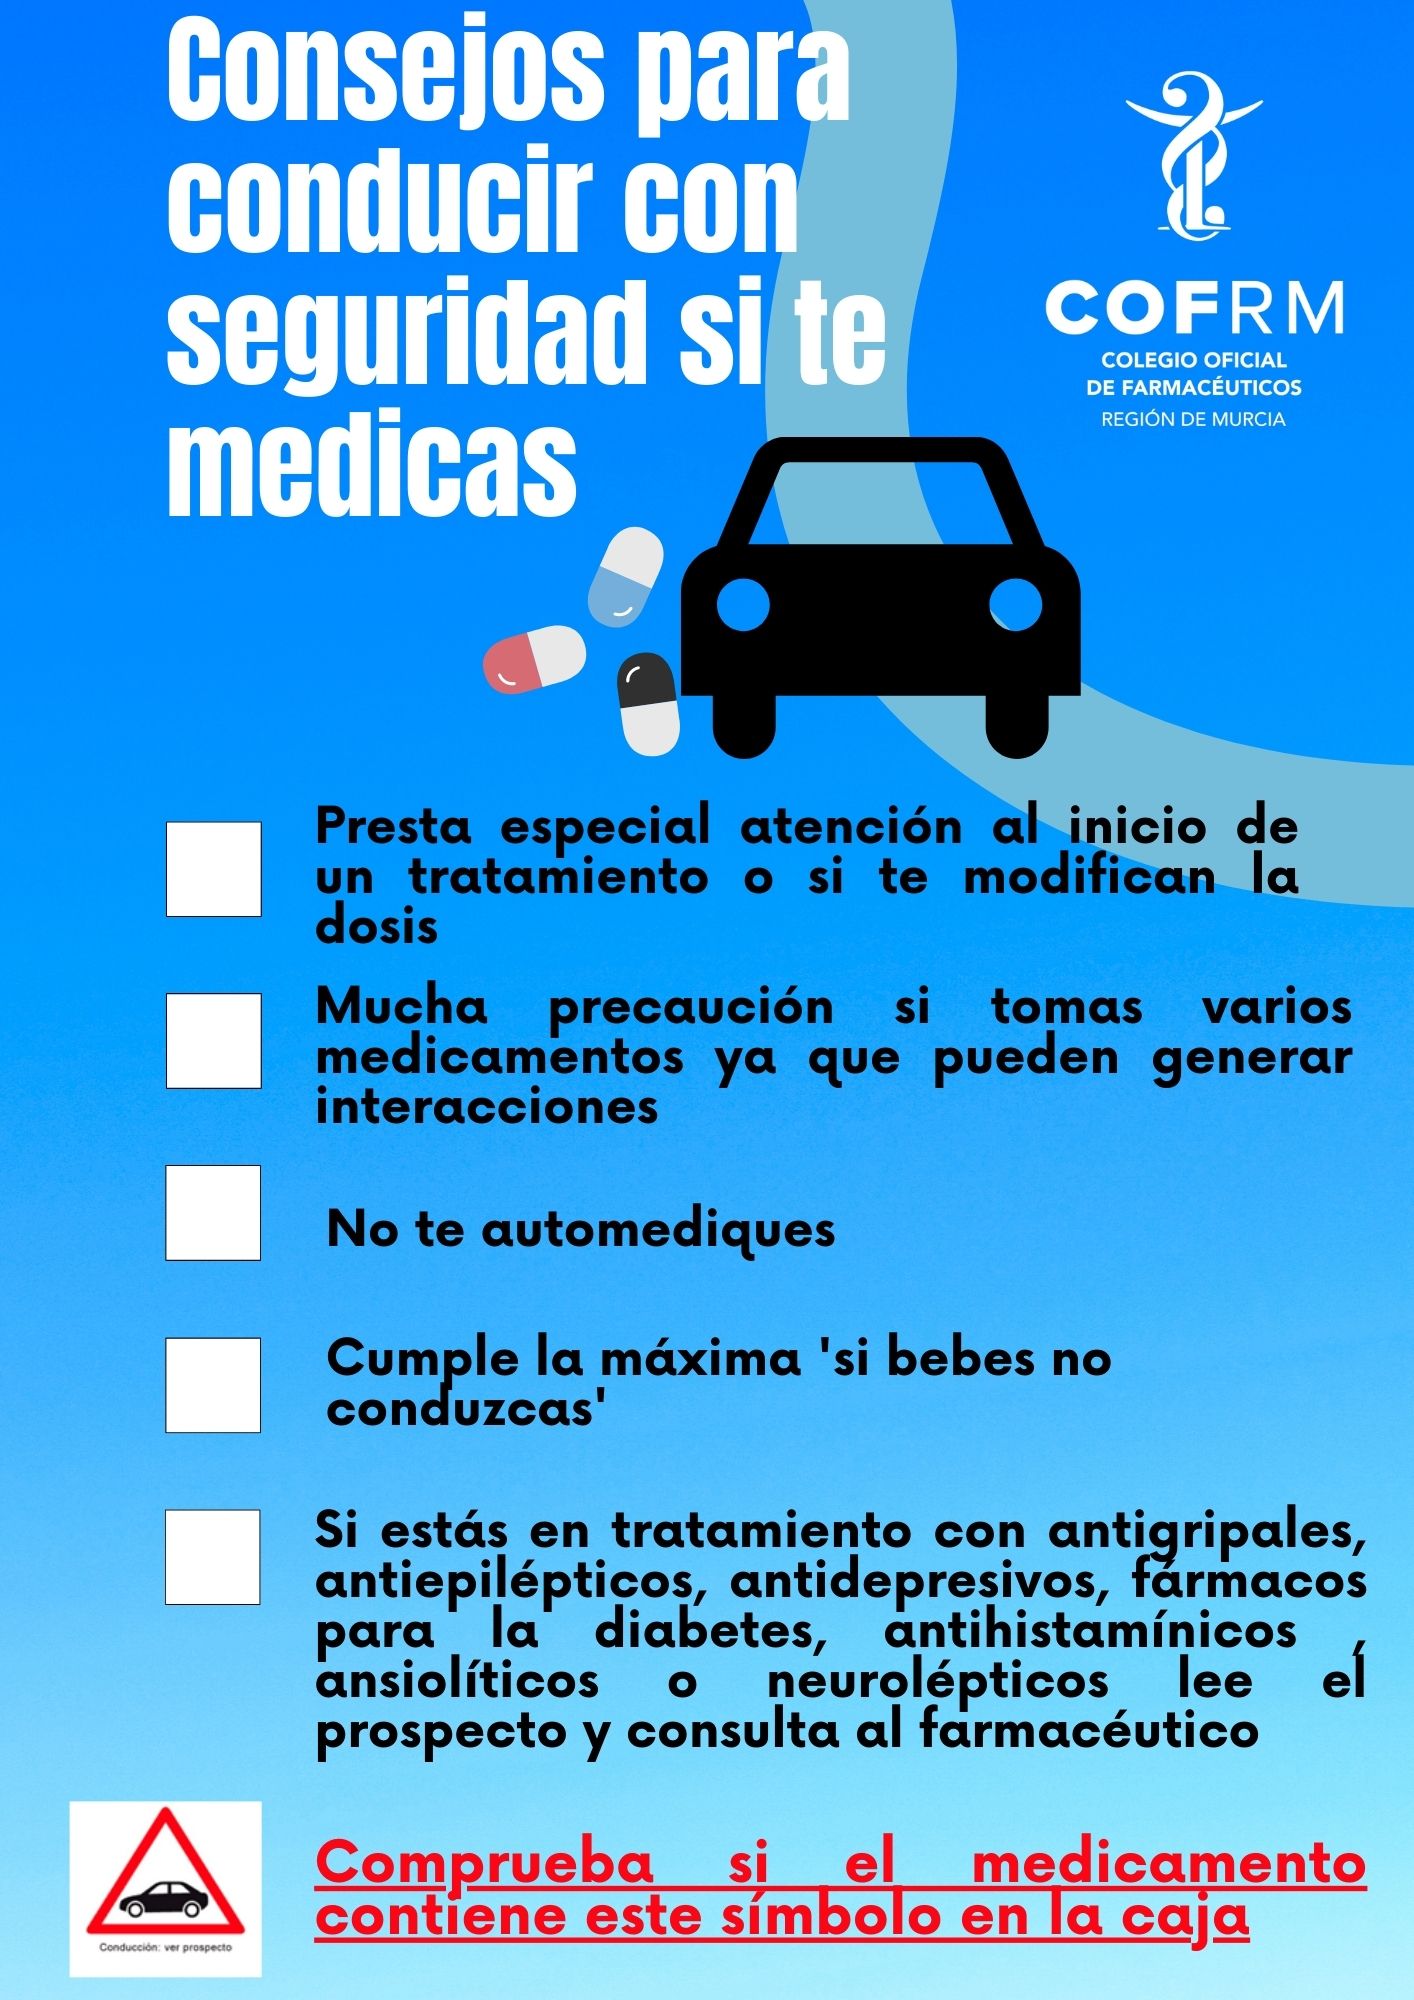 El COFRM ofrece consejos básicos para conducir con seguridad si se toma medicación